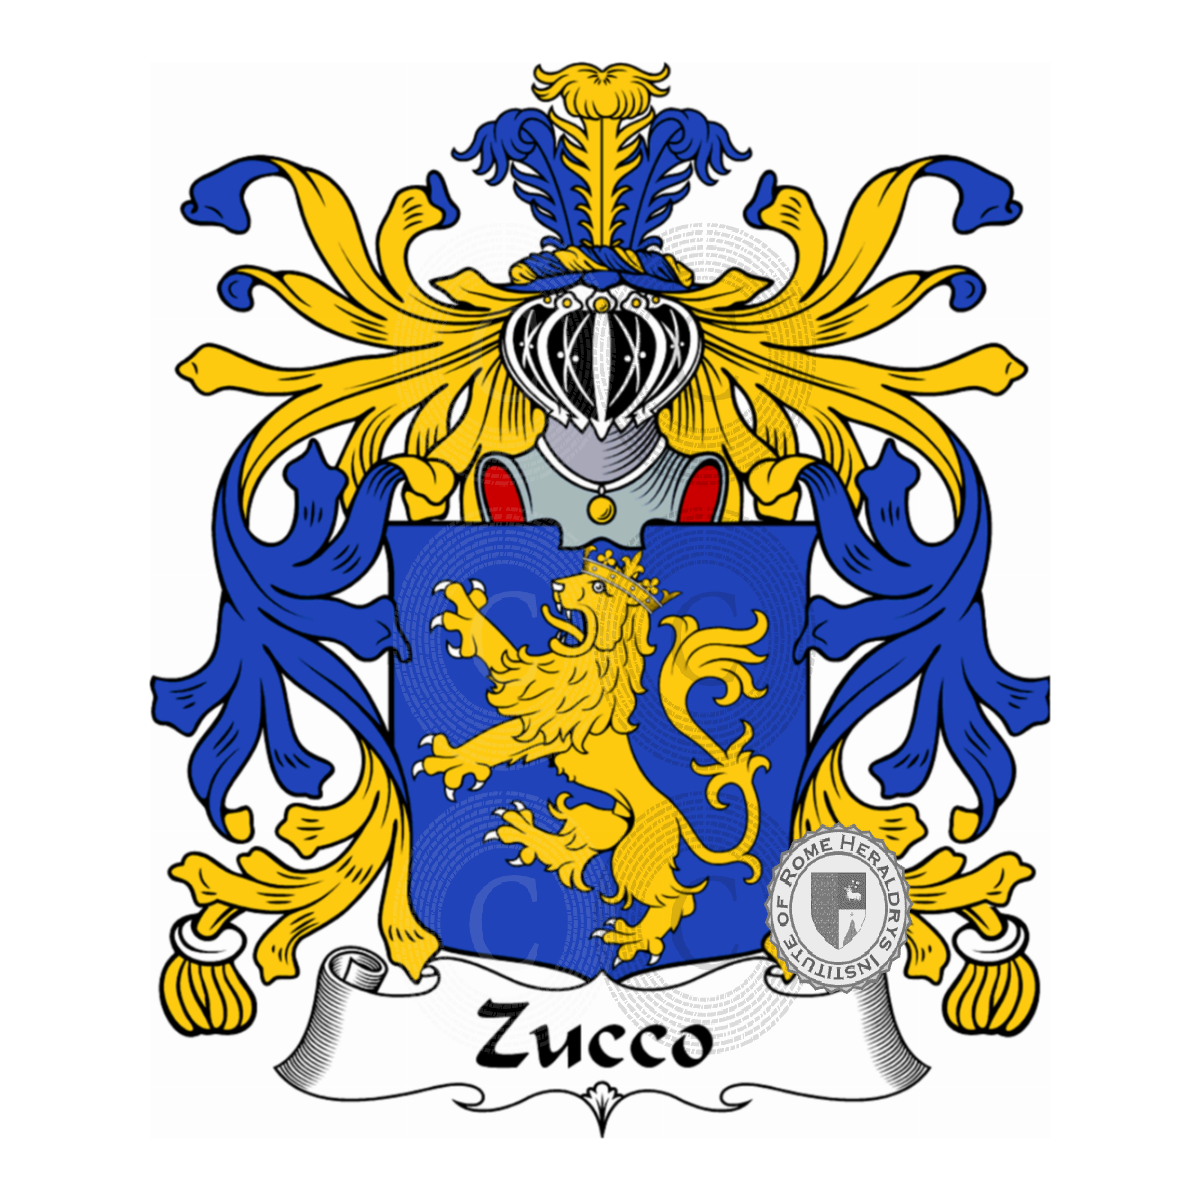 Brasão da famíliaZucco, Zucca,Zucco Cuccagna,Zucco di Cuccagna